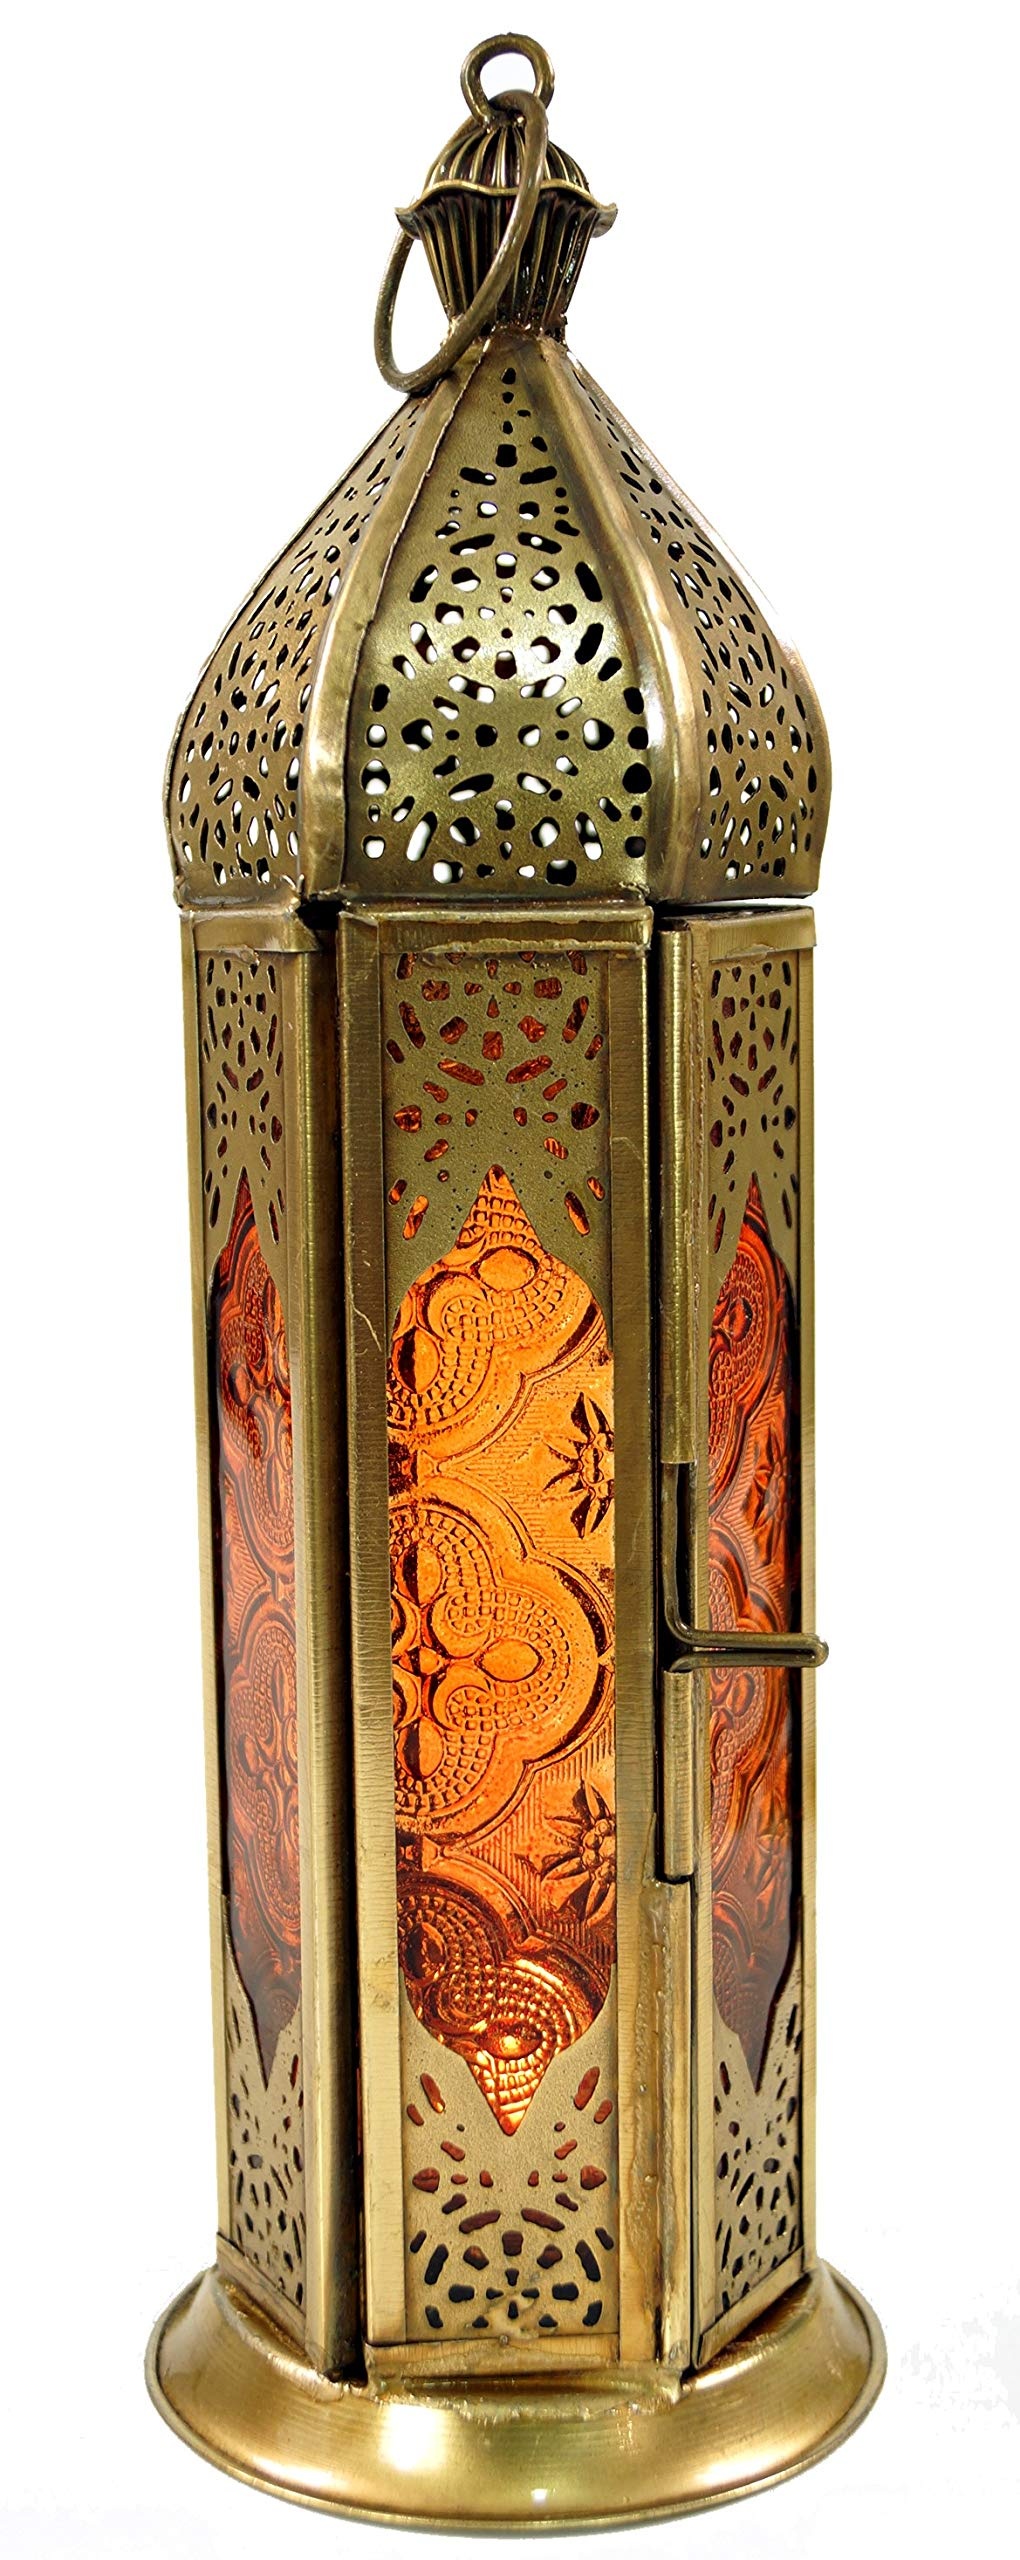 GURU SHOP Orientalische Metall/Glas Laterne in Marrokanischem Design, Windlicht, Orange, Farbe: Orange, 23x8x8 cm, Orientalische Laternen